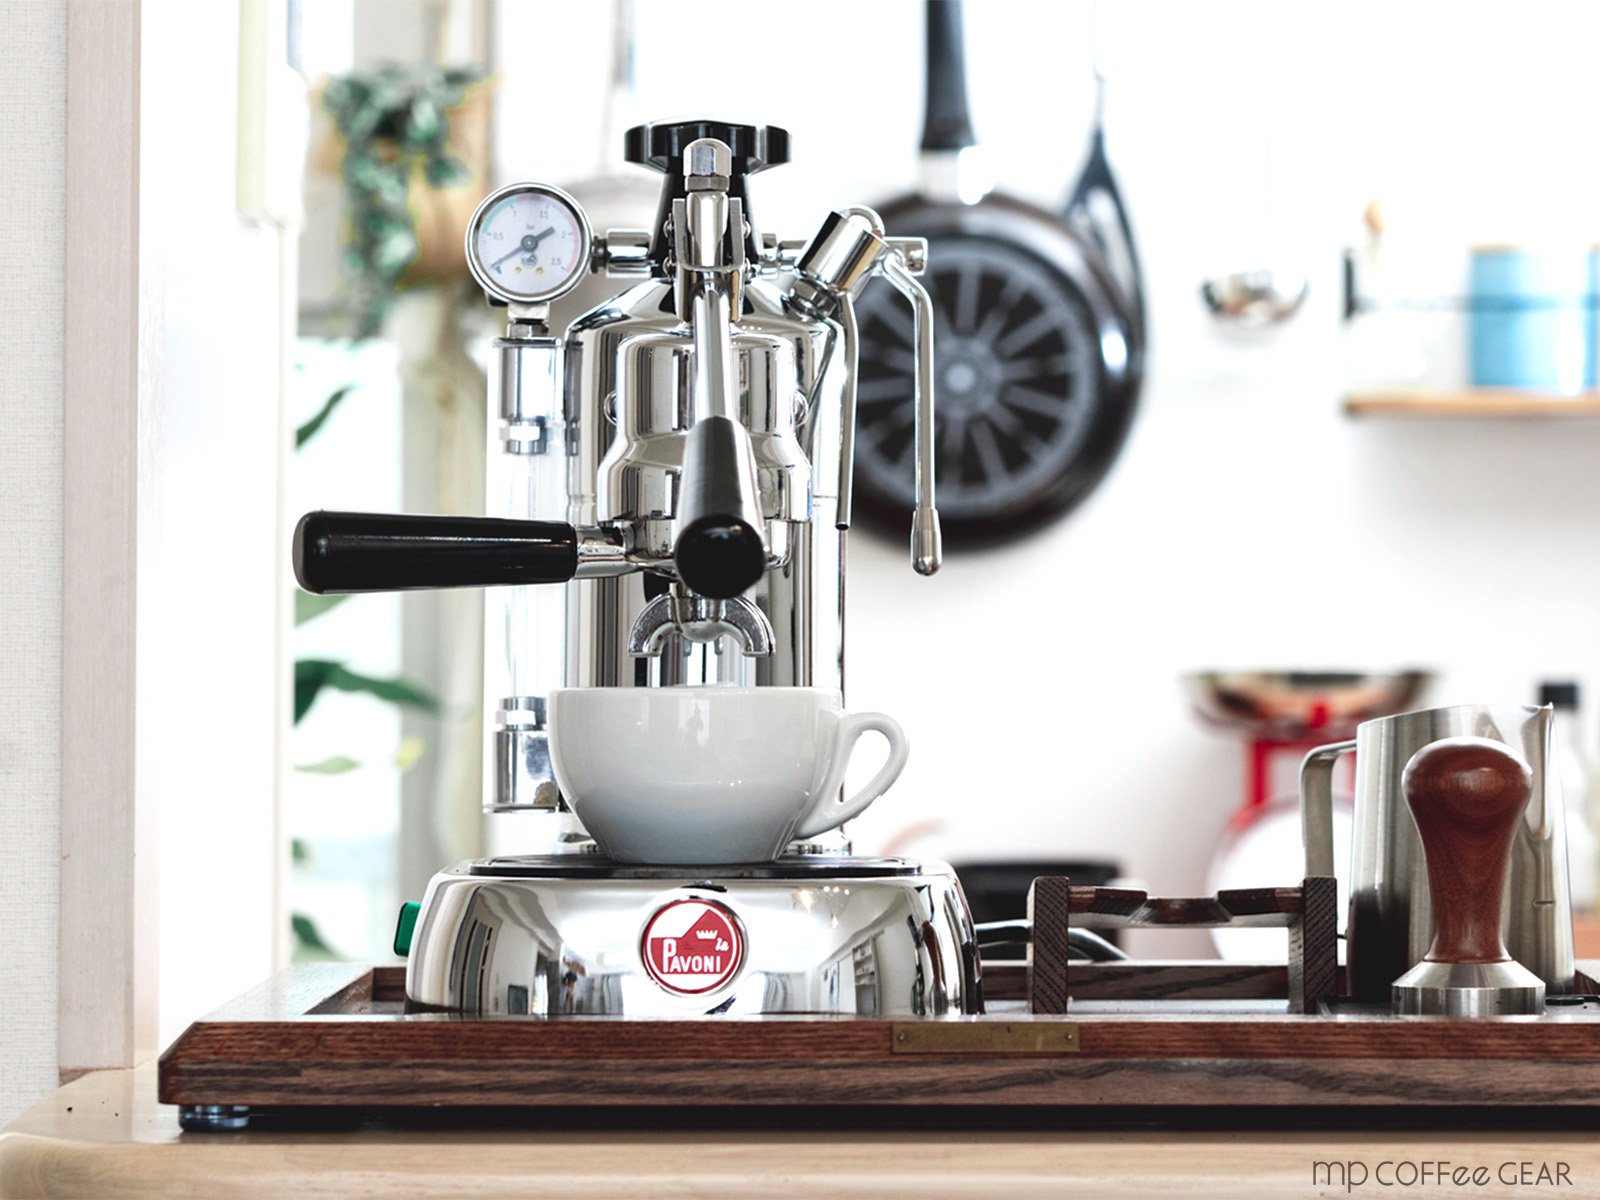 la Pavoni （ラ・パヴォーニ）エスプレッソマシン ”PROFESSIONAL” PL - mp COFFee GEAR ONLINE SHOP  （エムピーコーヒーギア）コーヒーツールの専門ショップ